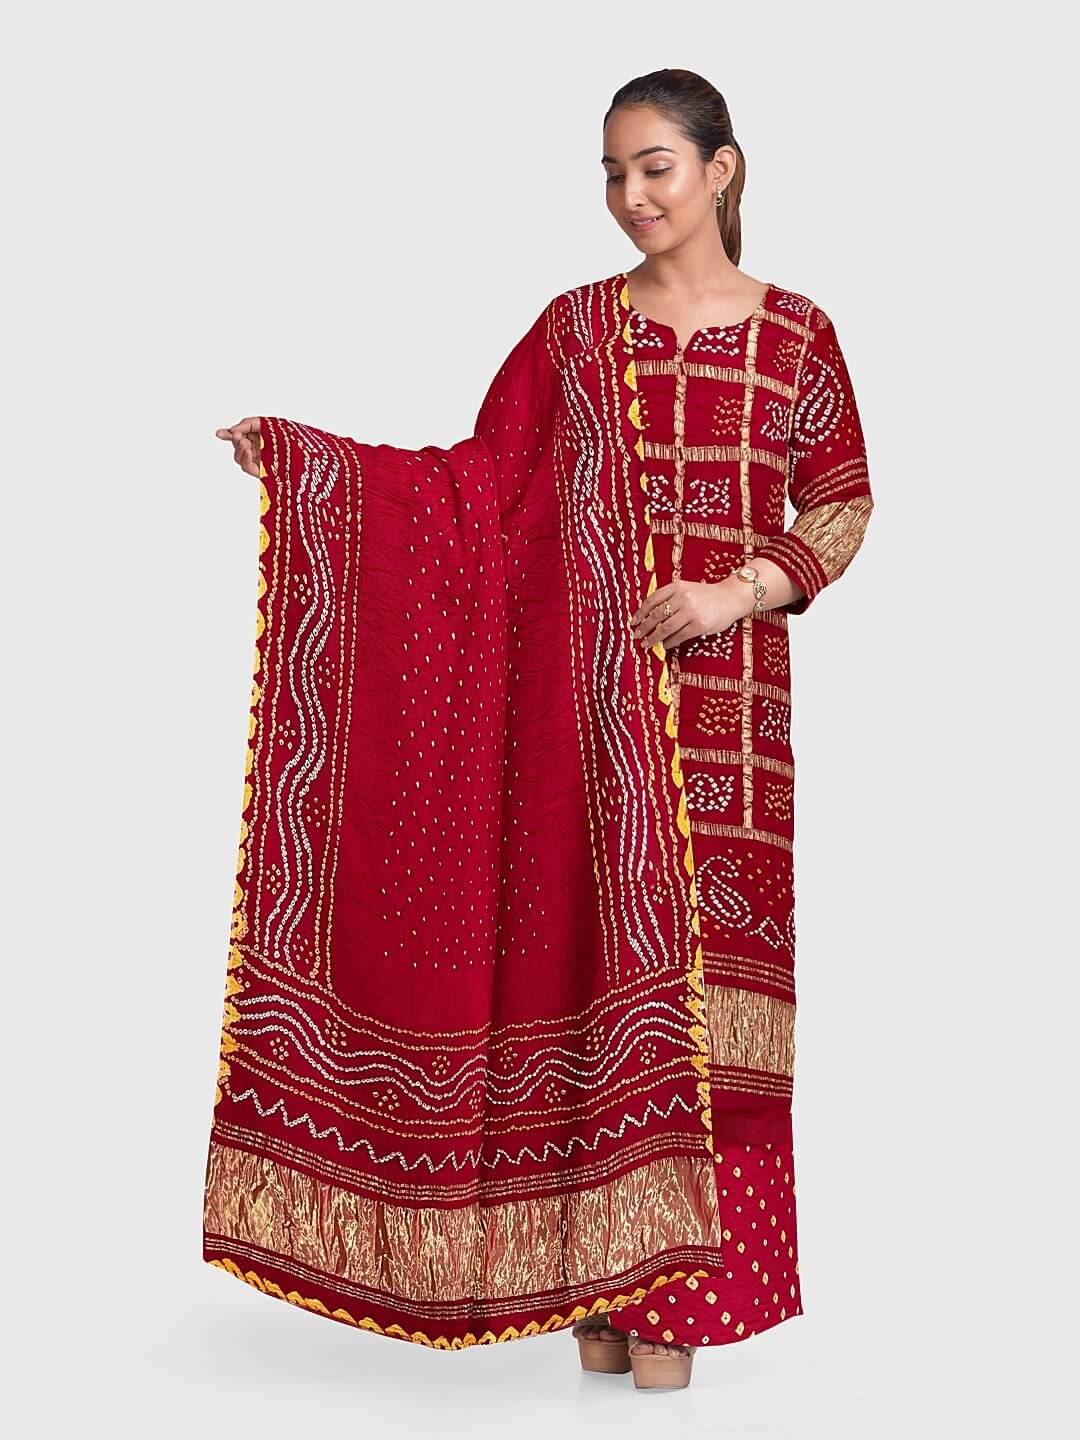 Buy AZAD DYEING Women's Jam Cotton Bandhani Suit,& Dress Material (Black -  Orange, Jam Cotton) at Amazon.in